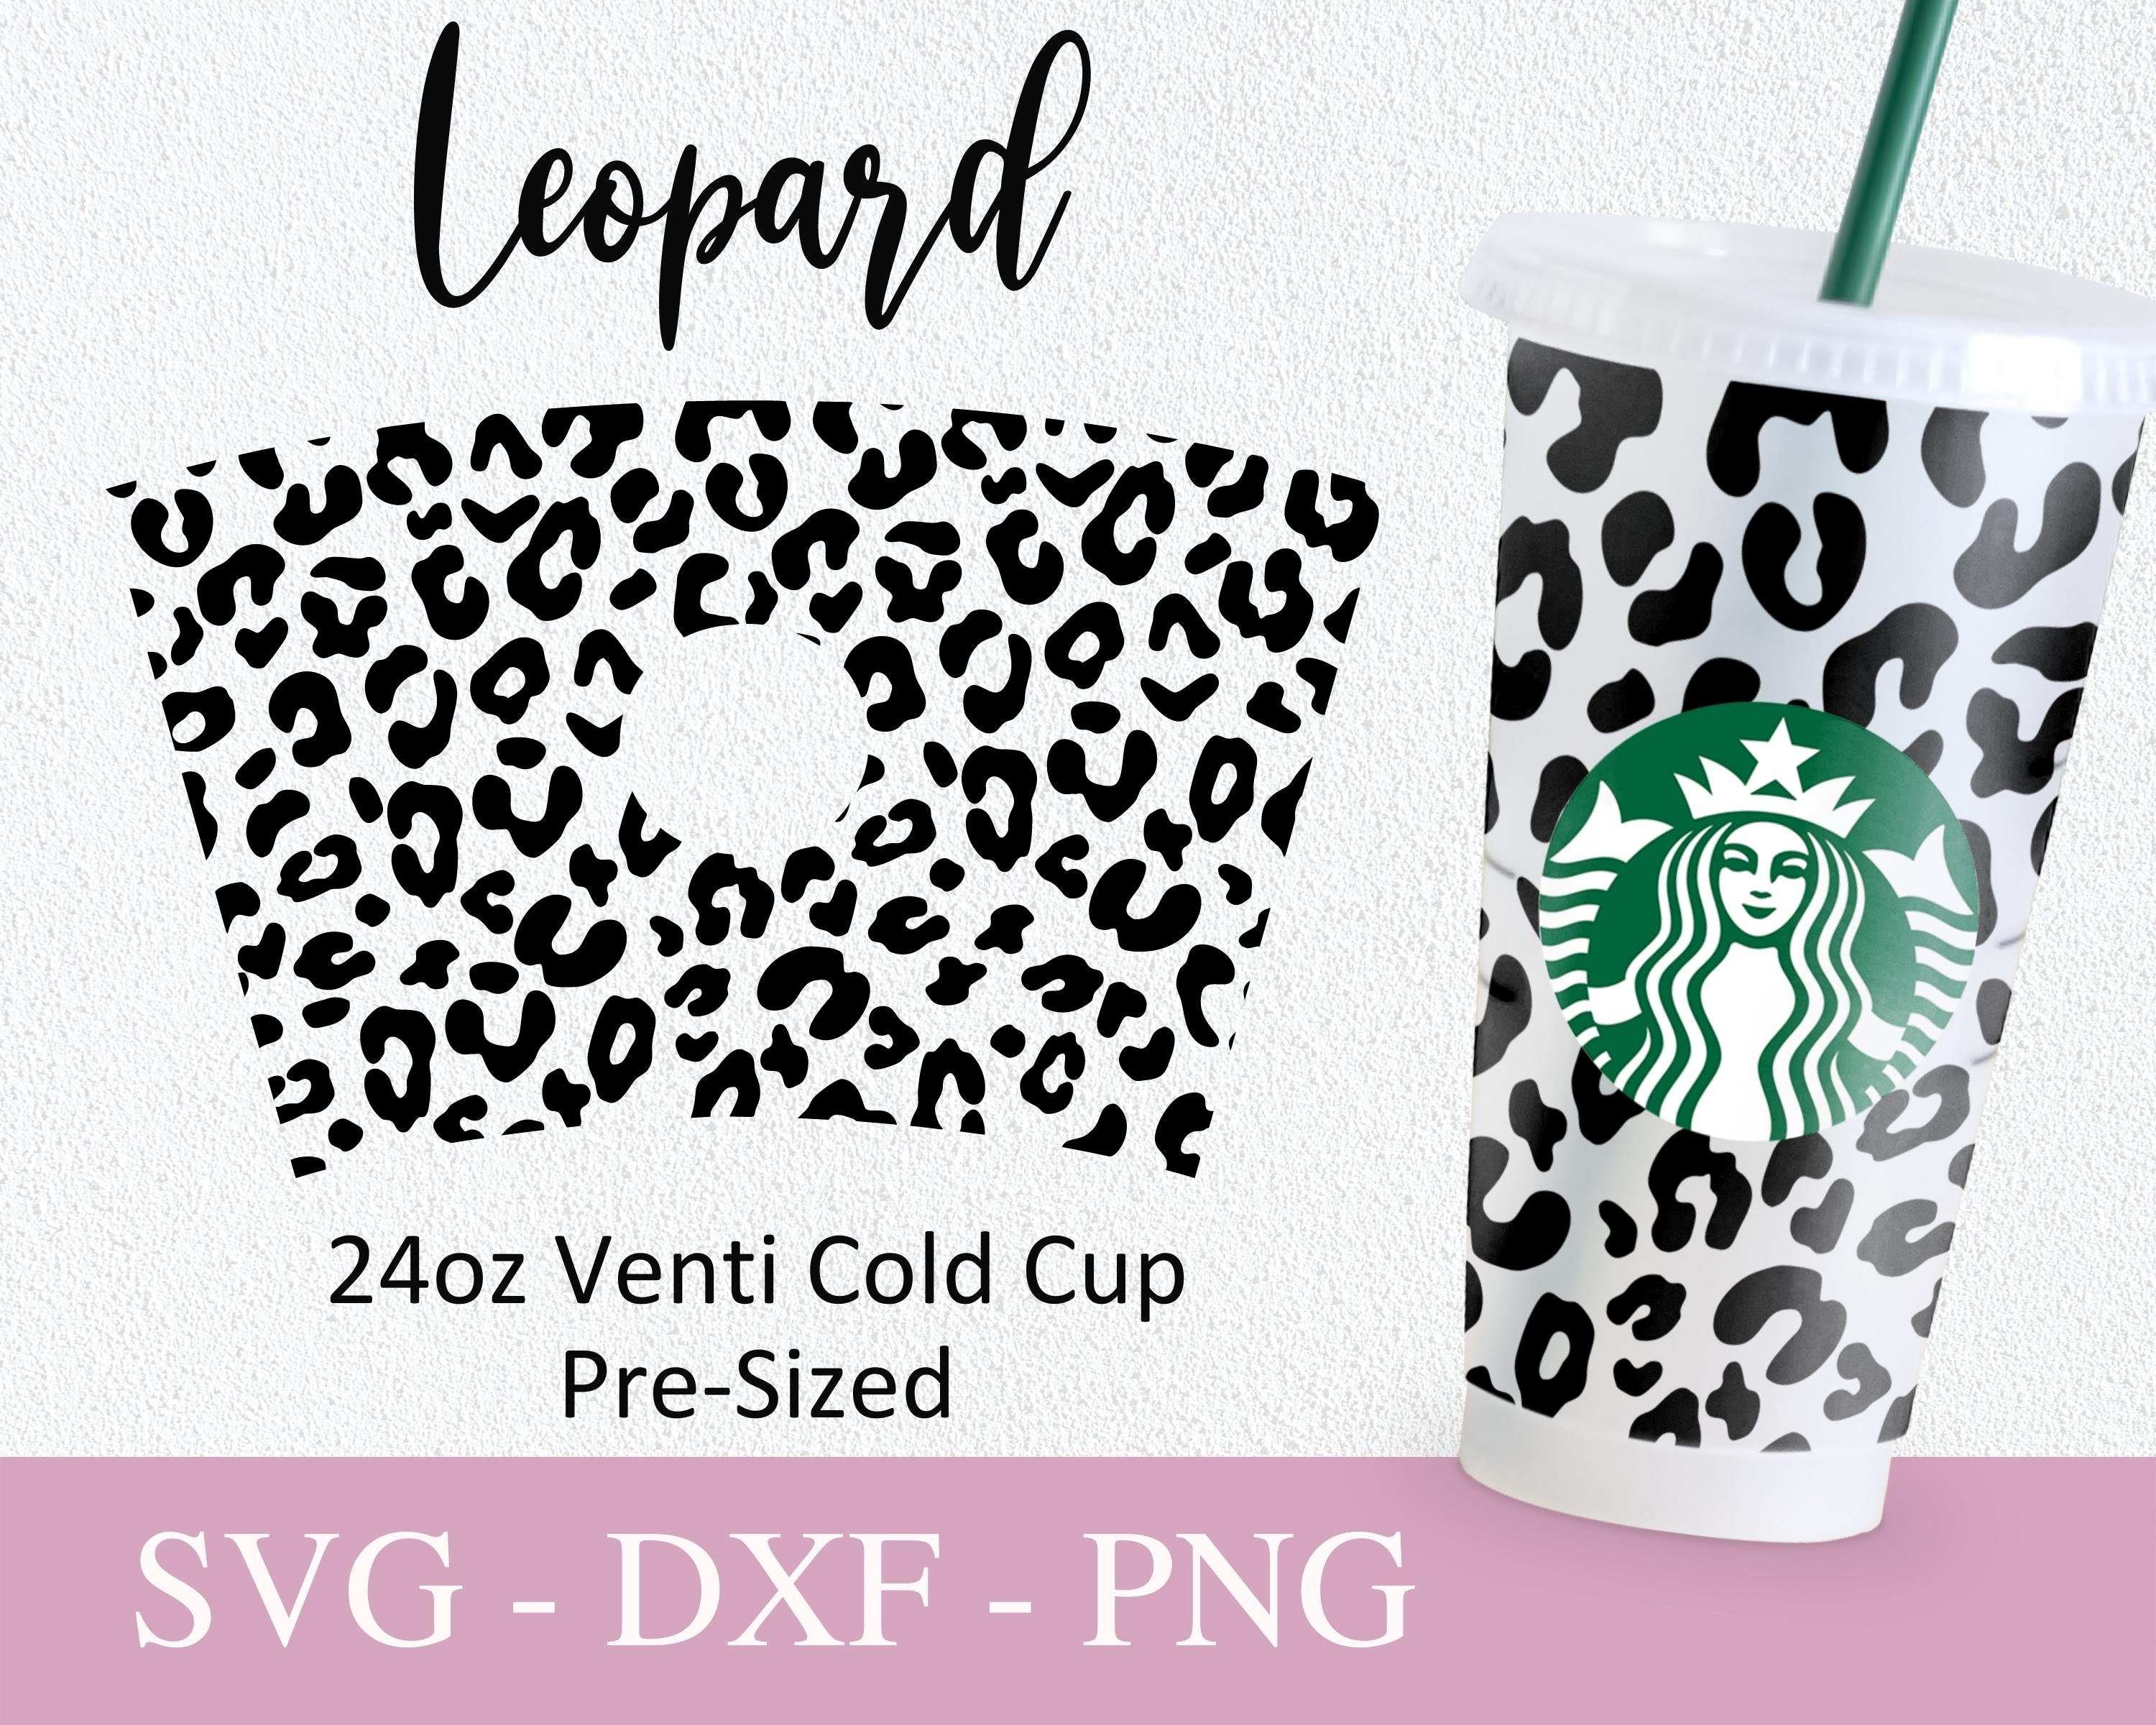 LV Full Wrap For Starbucks Cold Cup Svg, Trending Svg, LV St - Inspire  Uplift